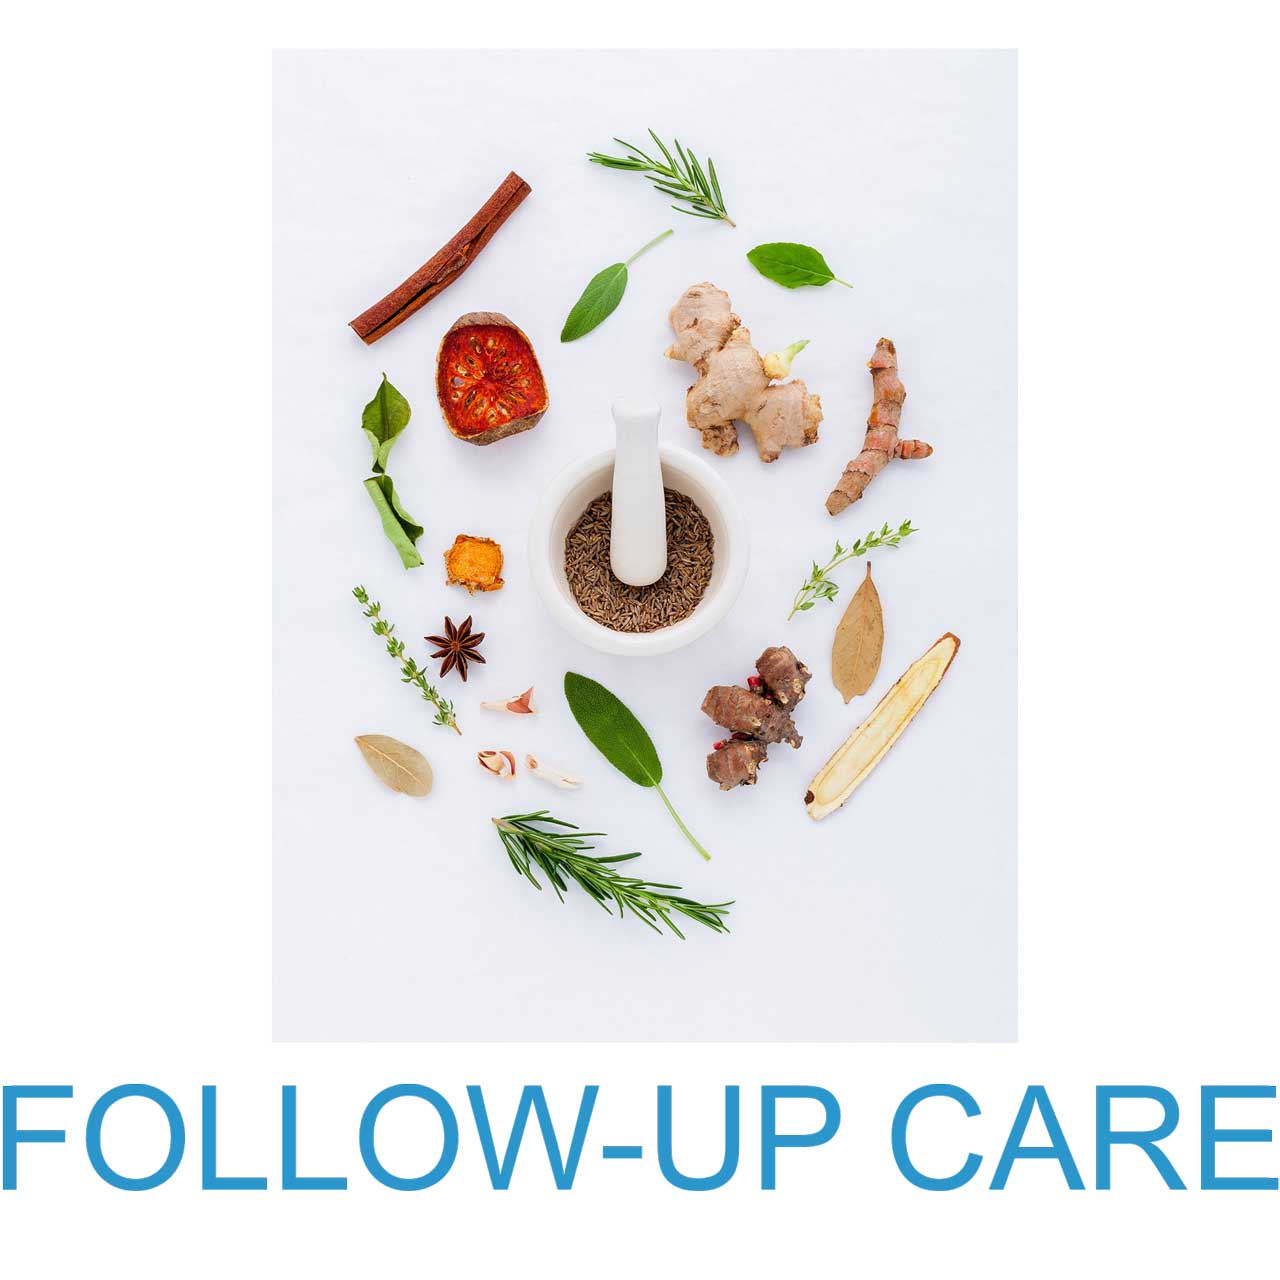 Follow-up Care